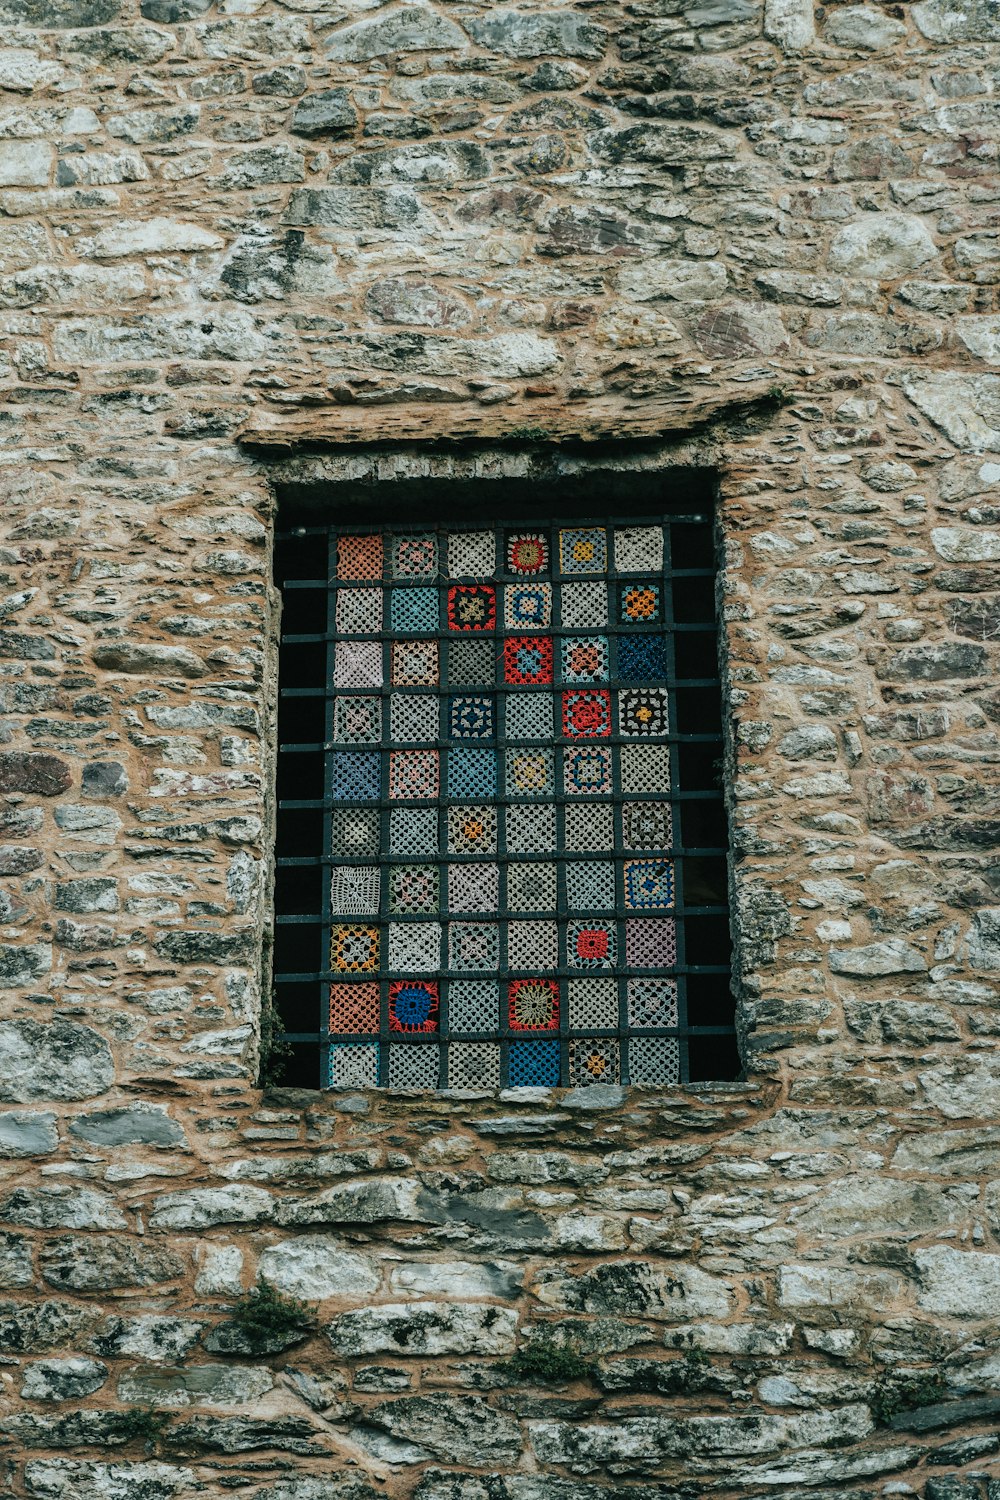 닫힌 검은 색과 여러 가지 빛깔의 창